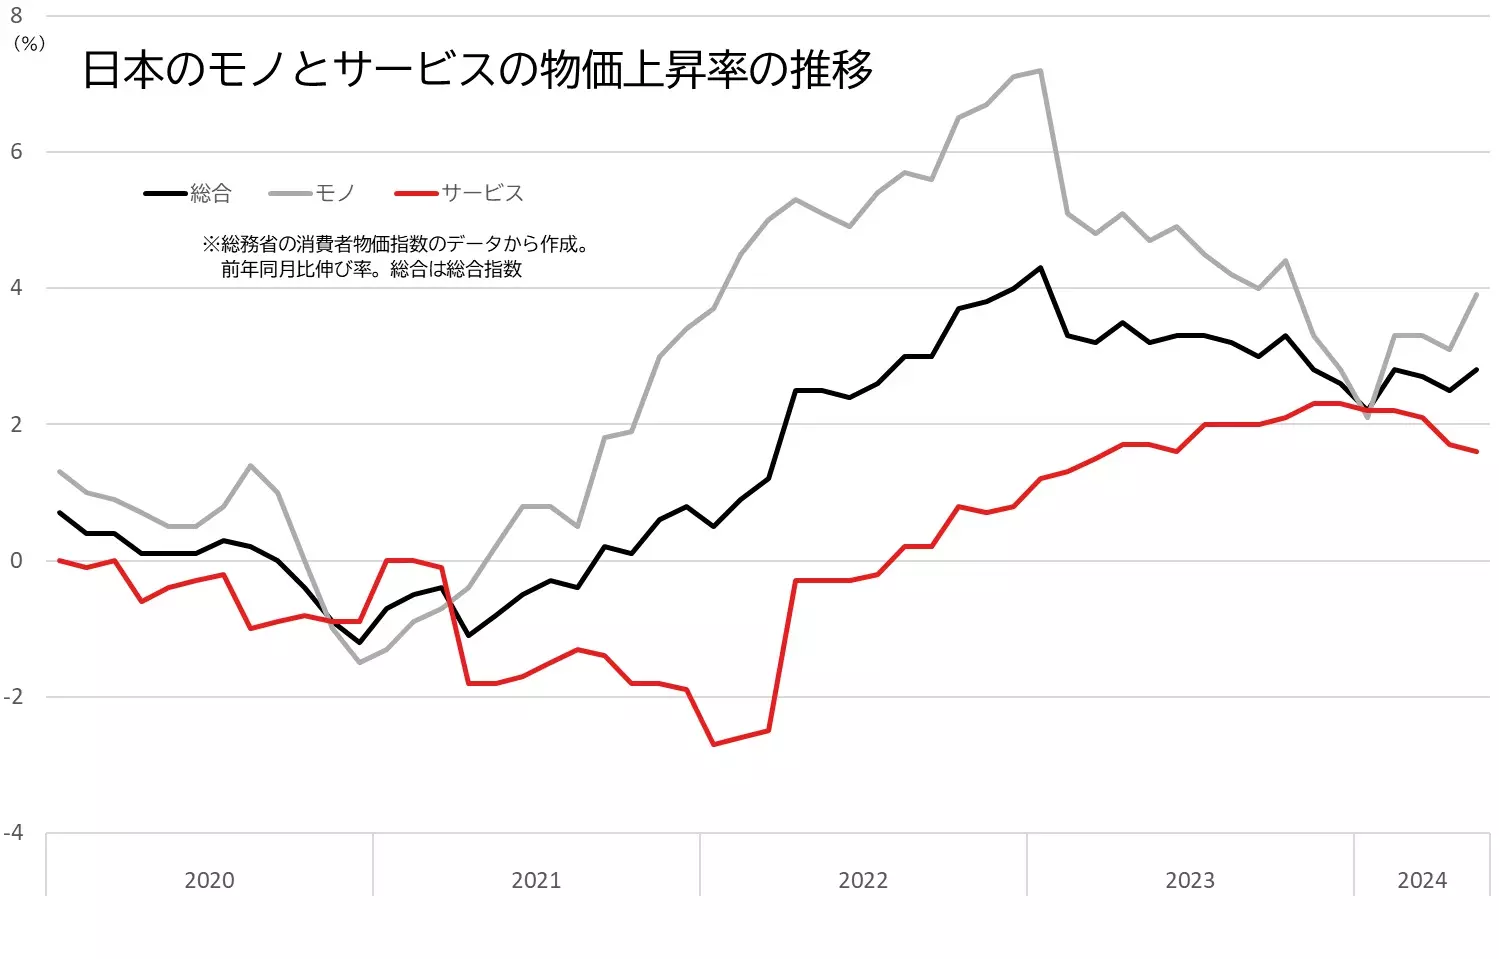 日本の消費者物価指数の伸び率（総合、モノ、サービス）の推移のグラフ